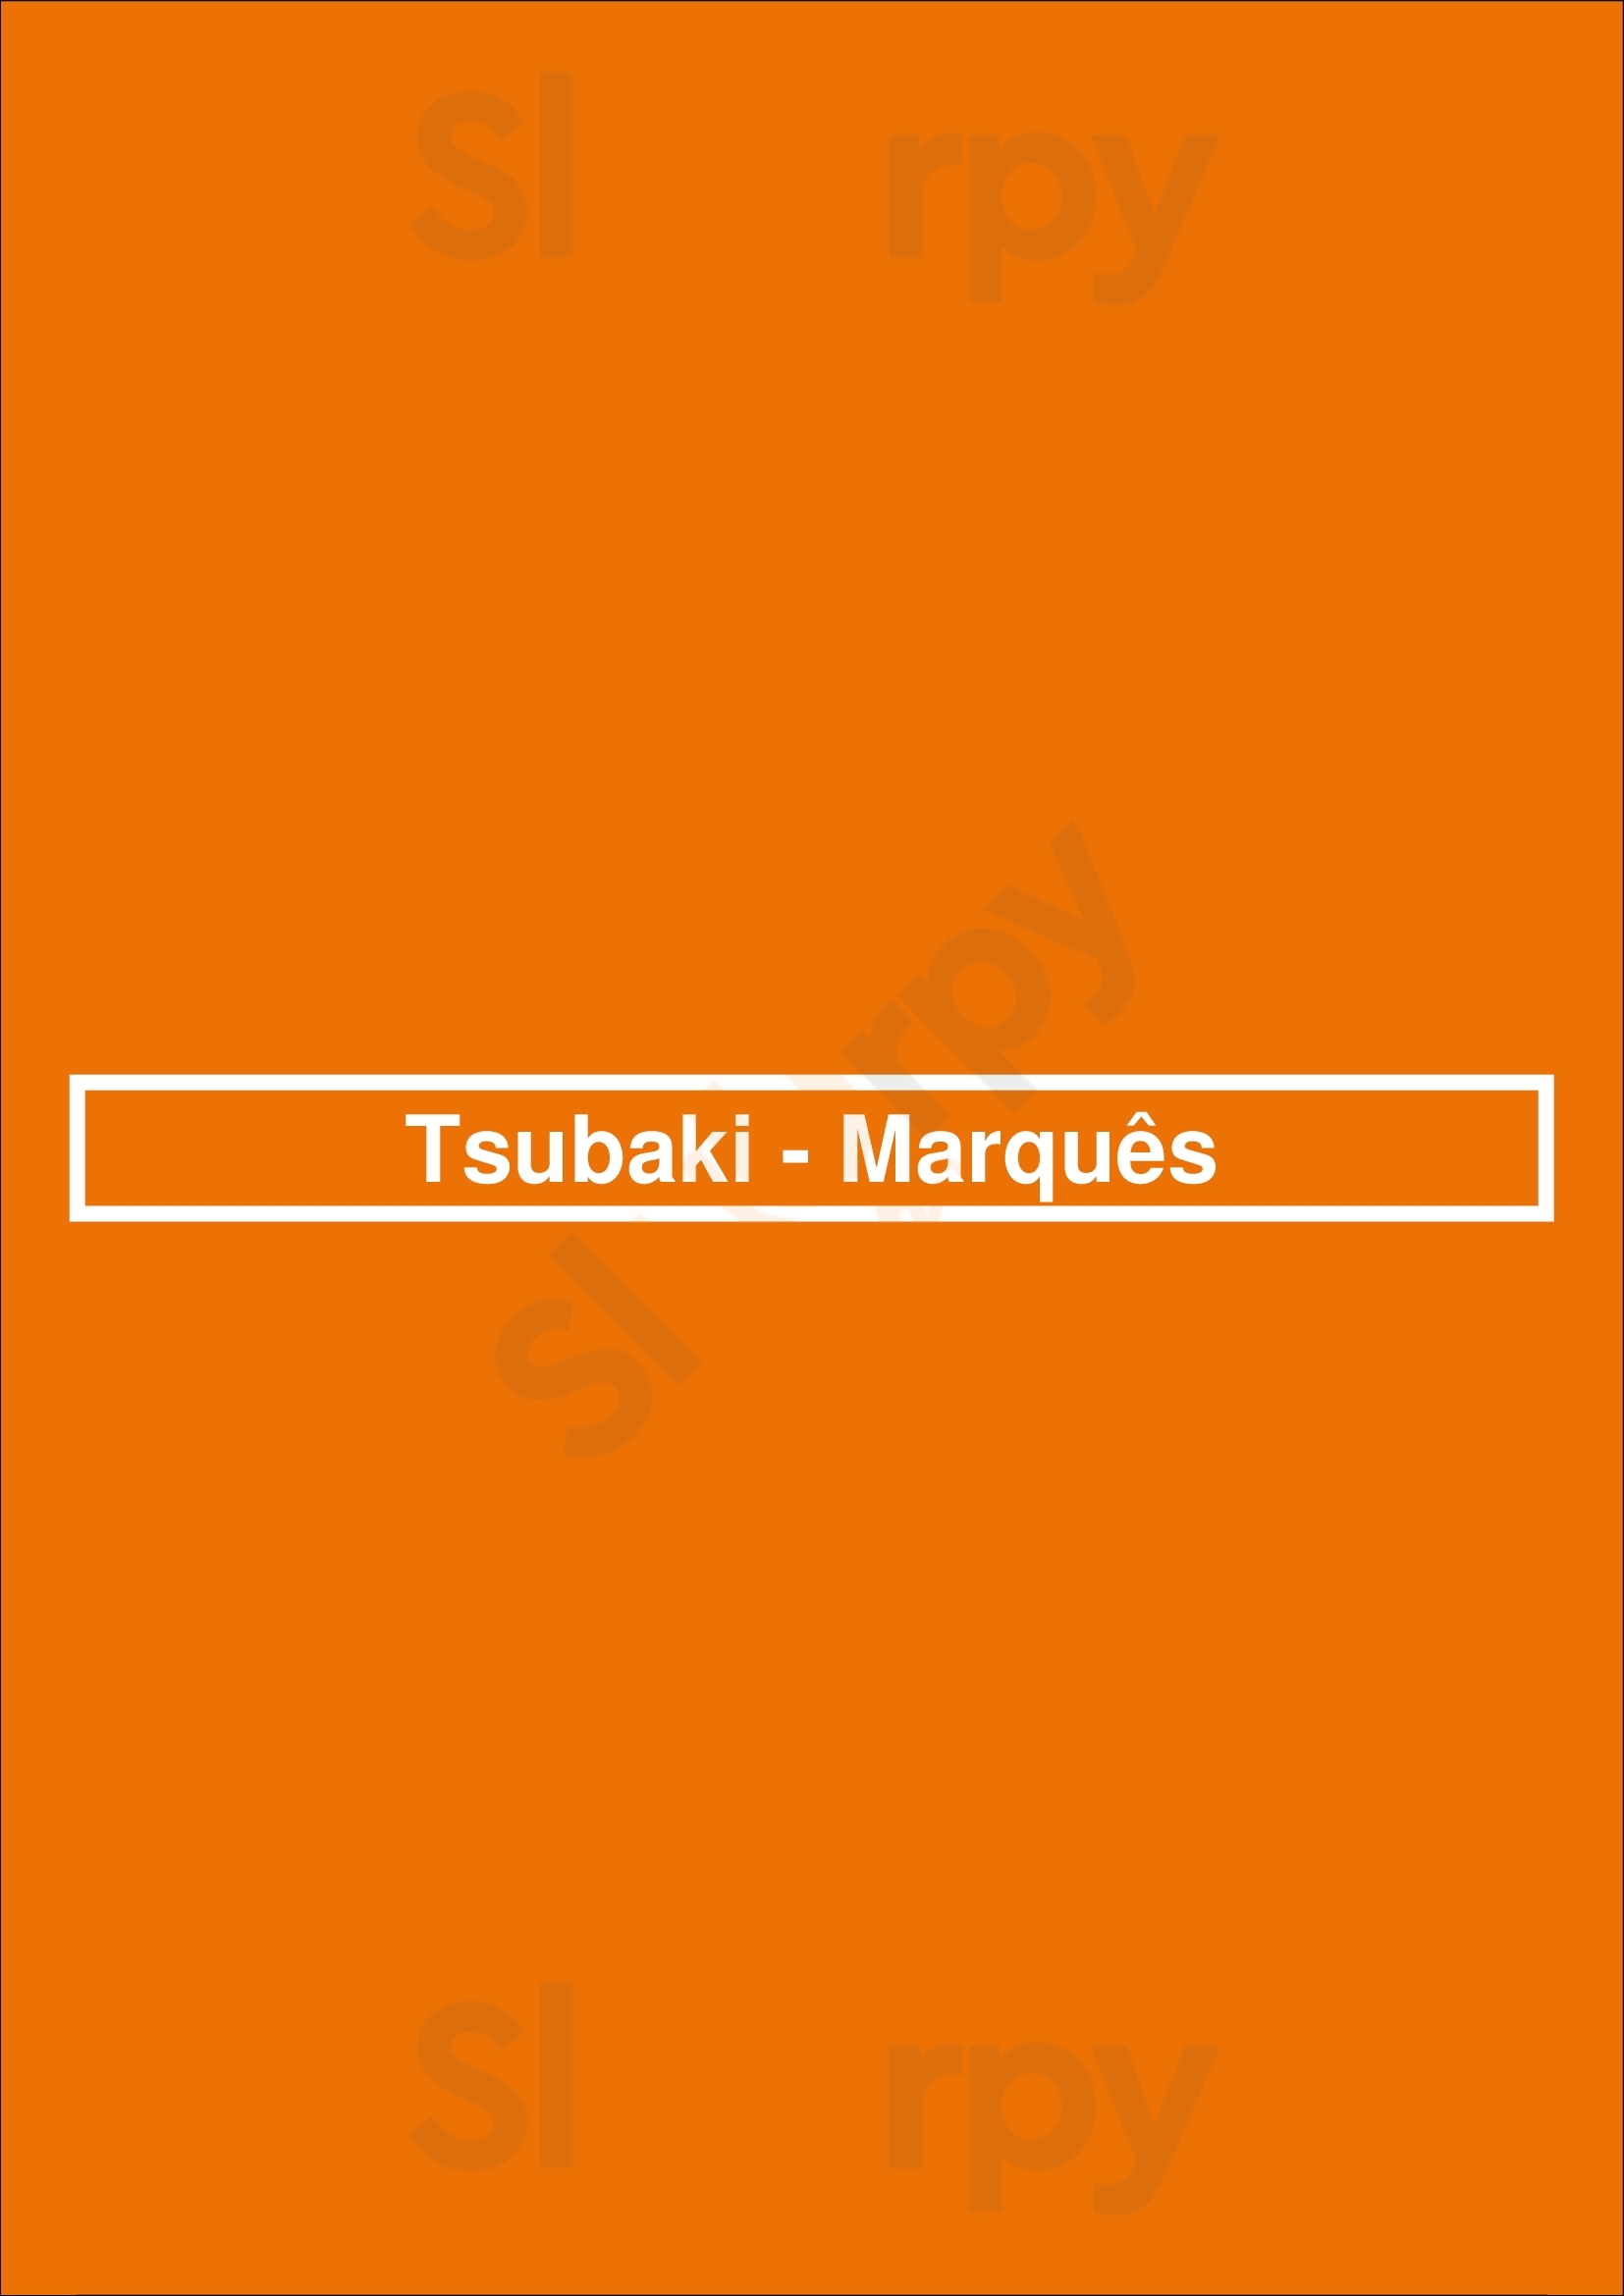 Tsubaki - Marquês Lisboa Menu - 1